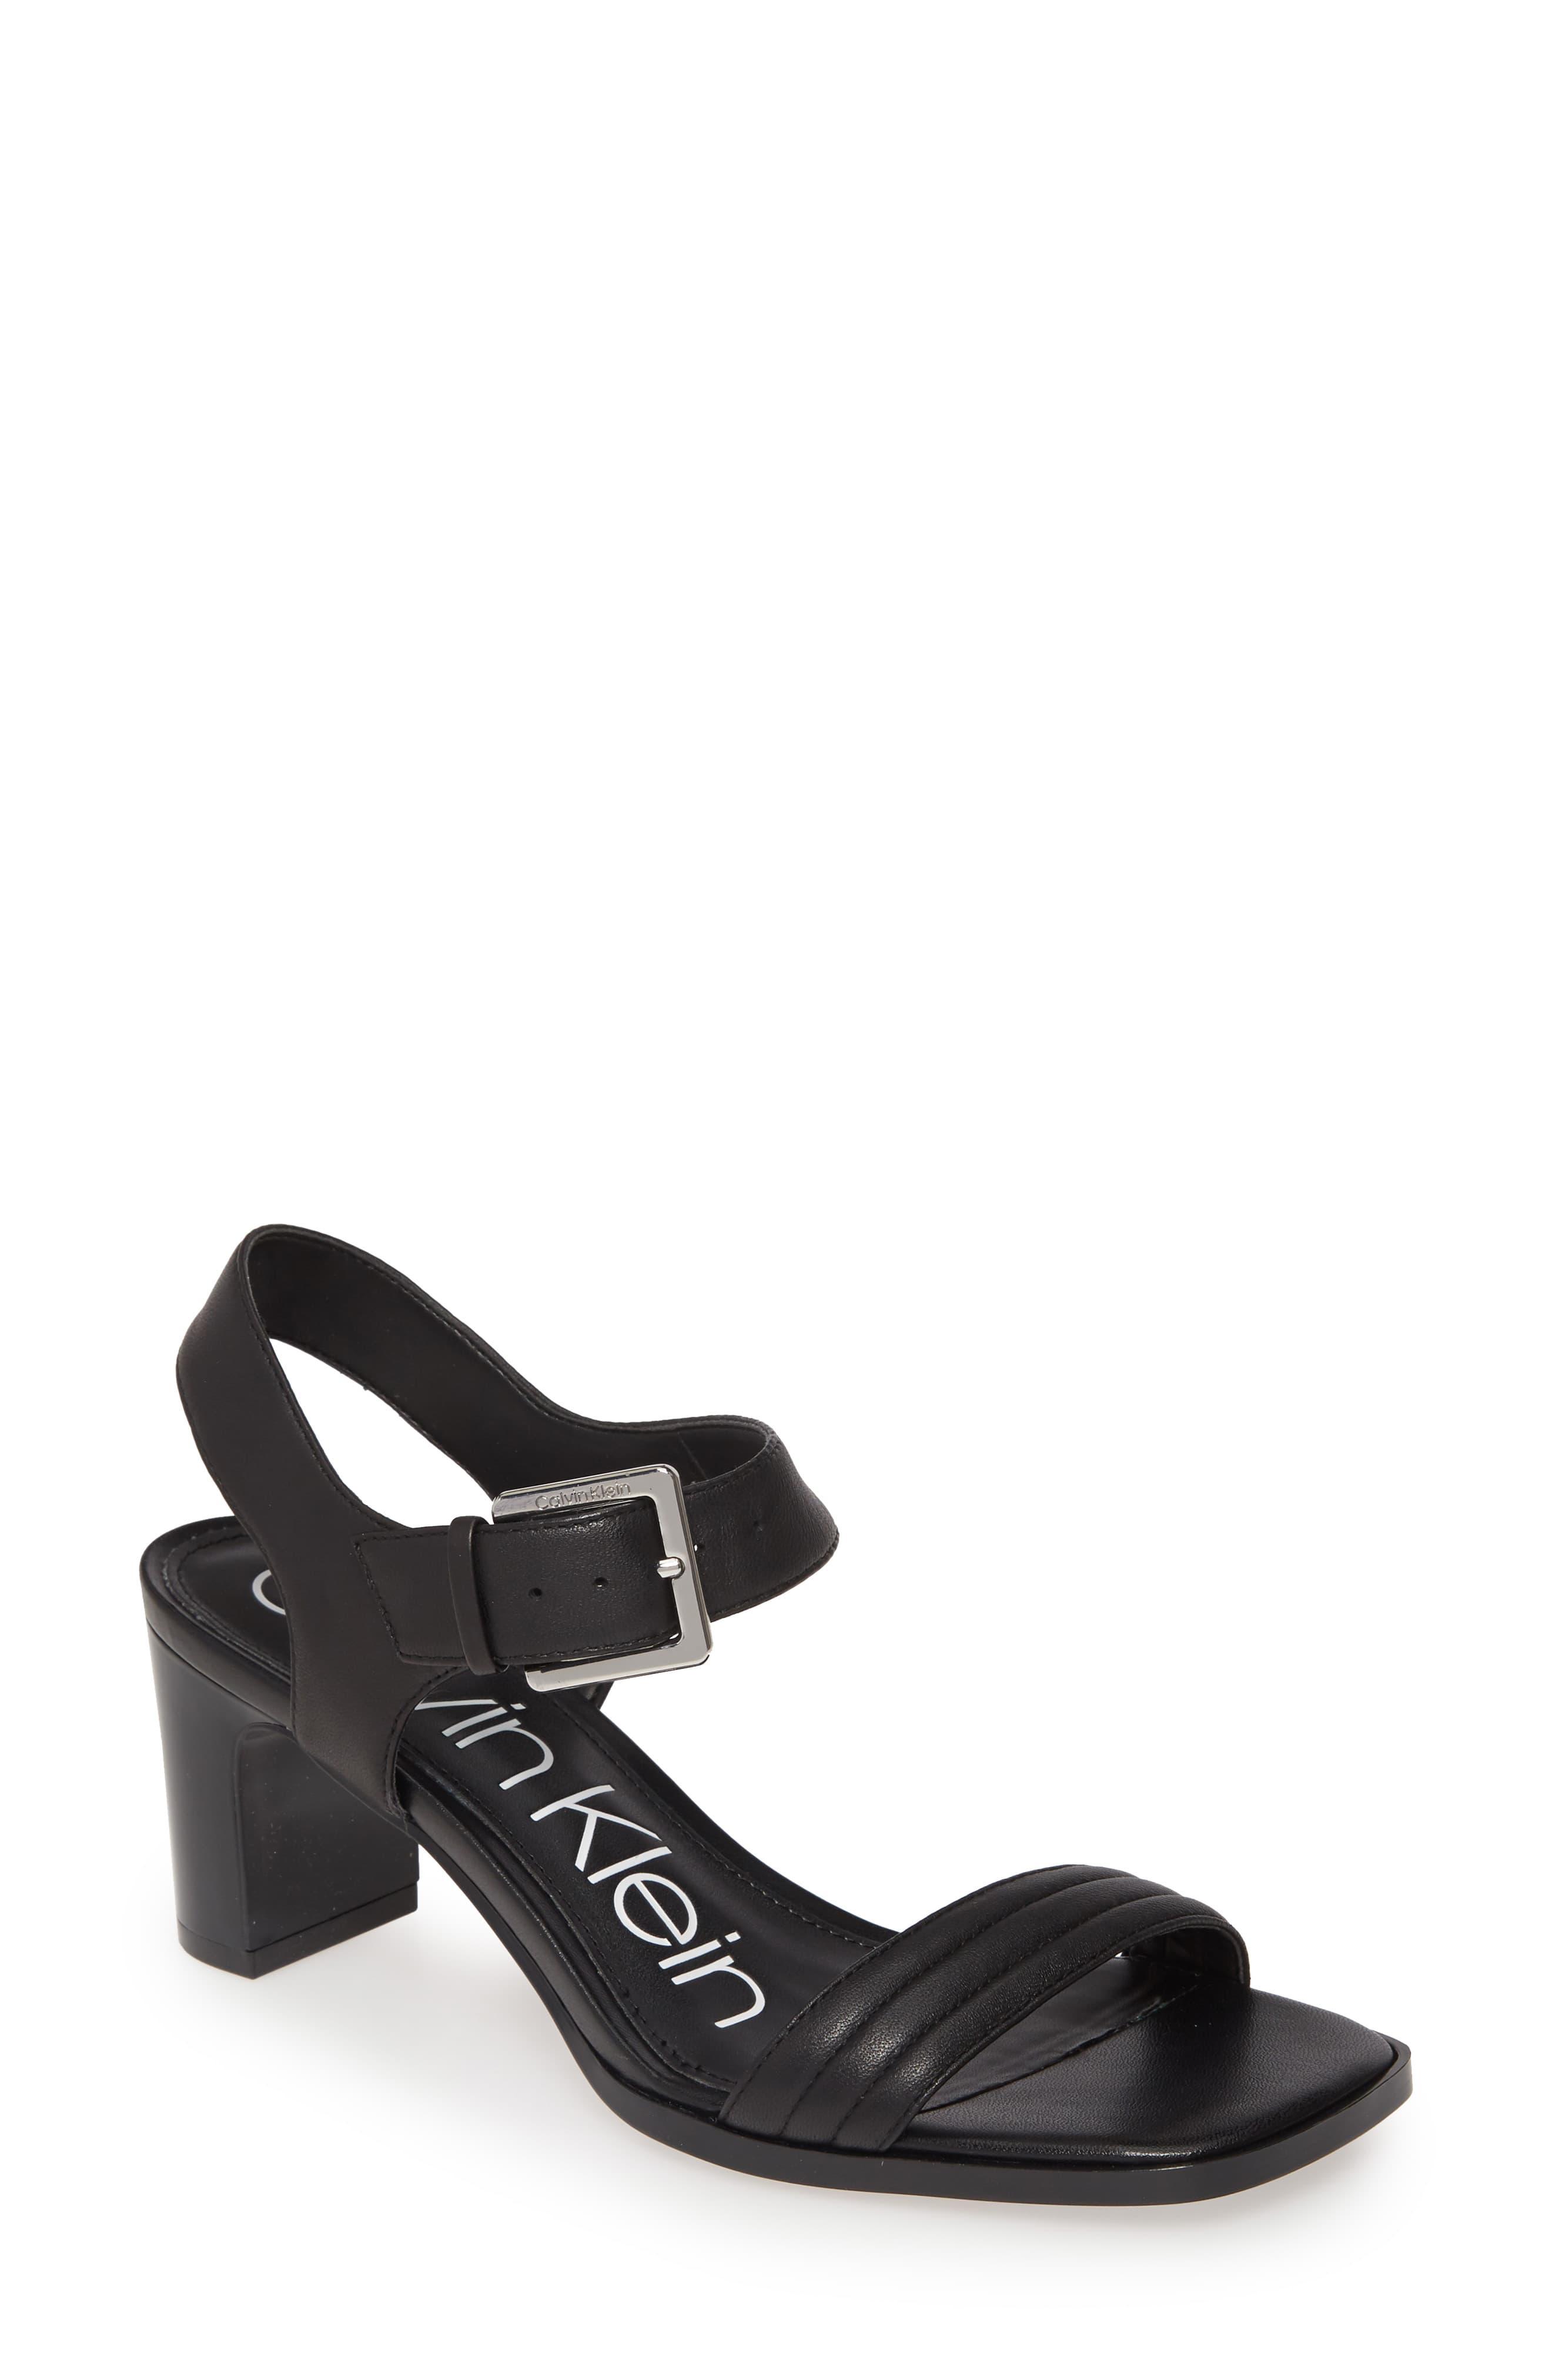 Calvin Klein Darla Sandal in Black Leather (Black) - Lyst